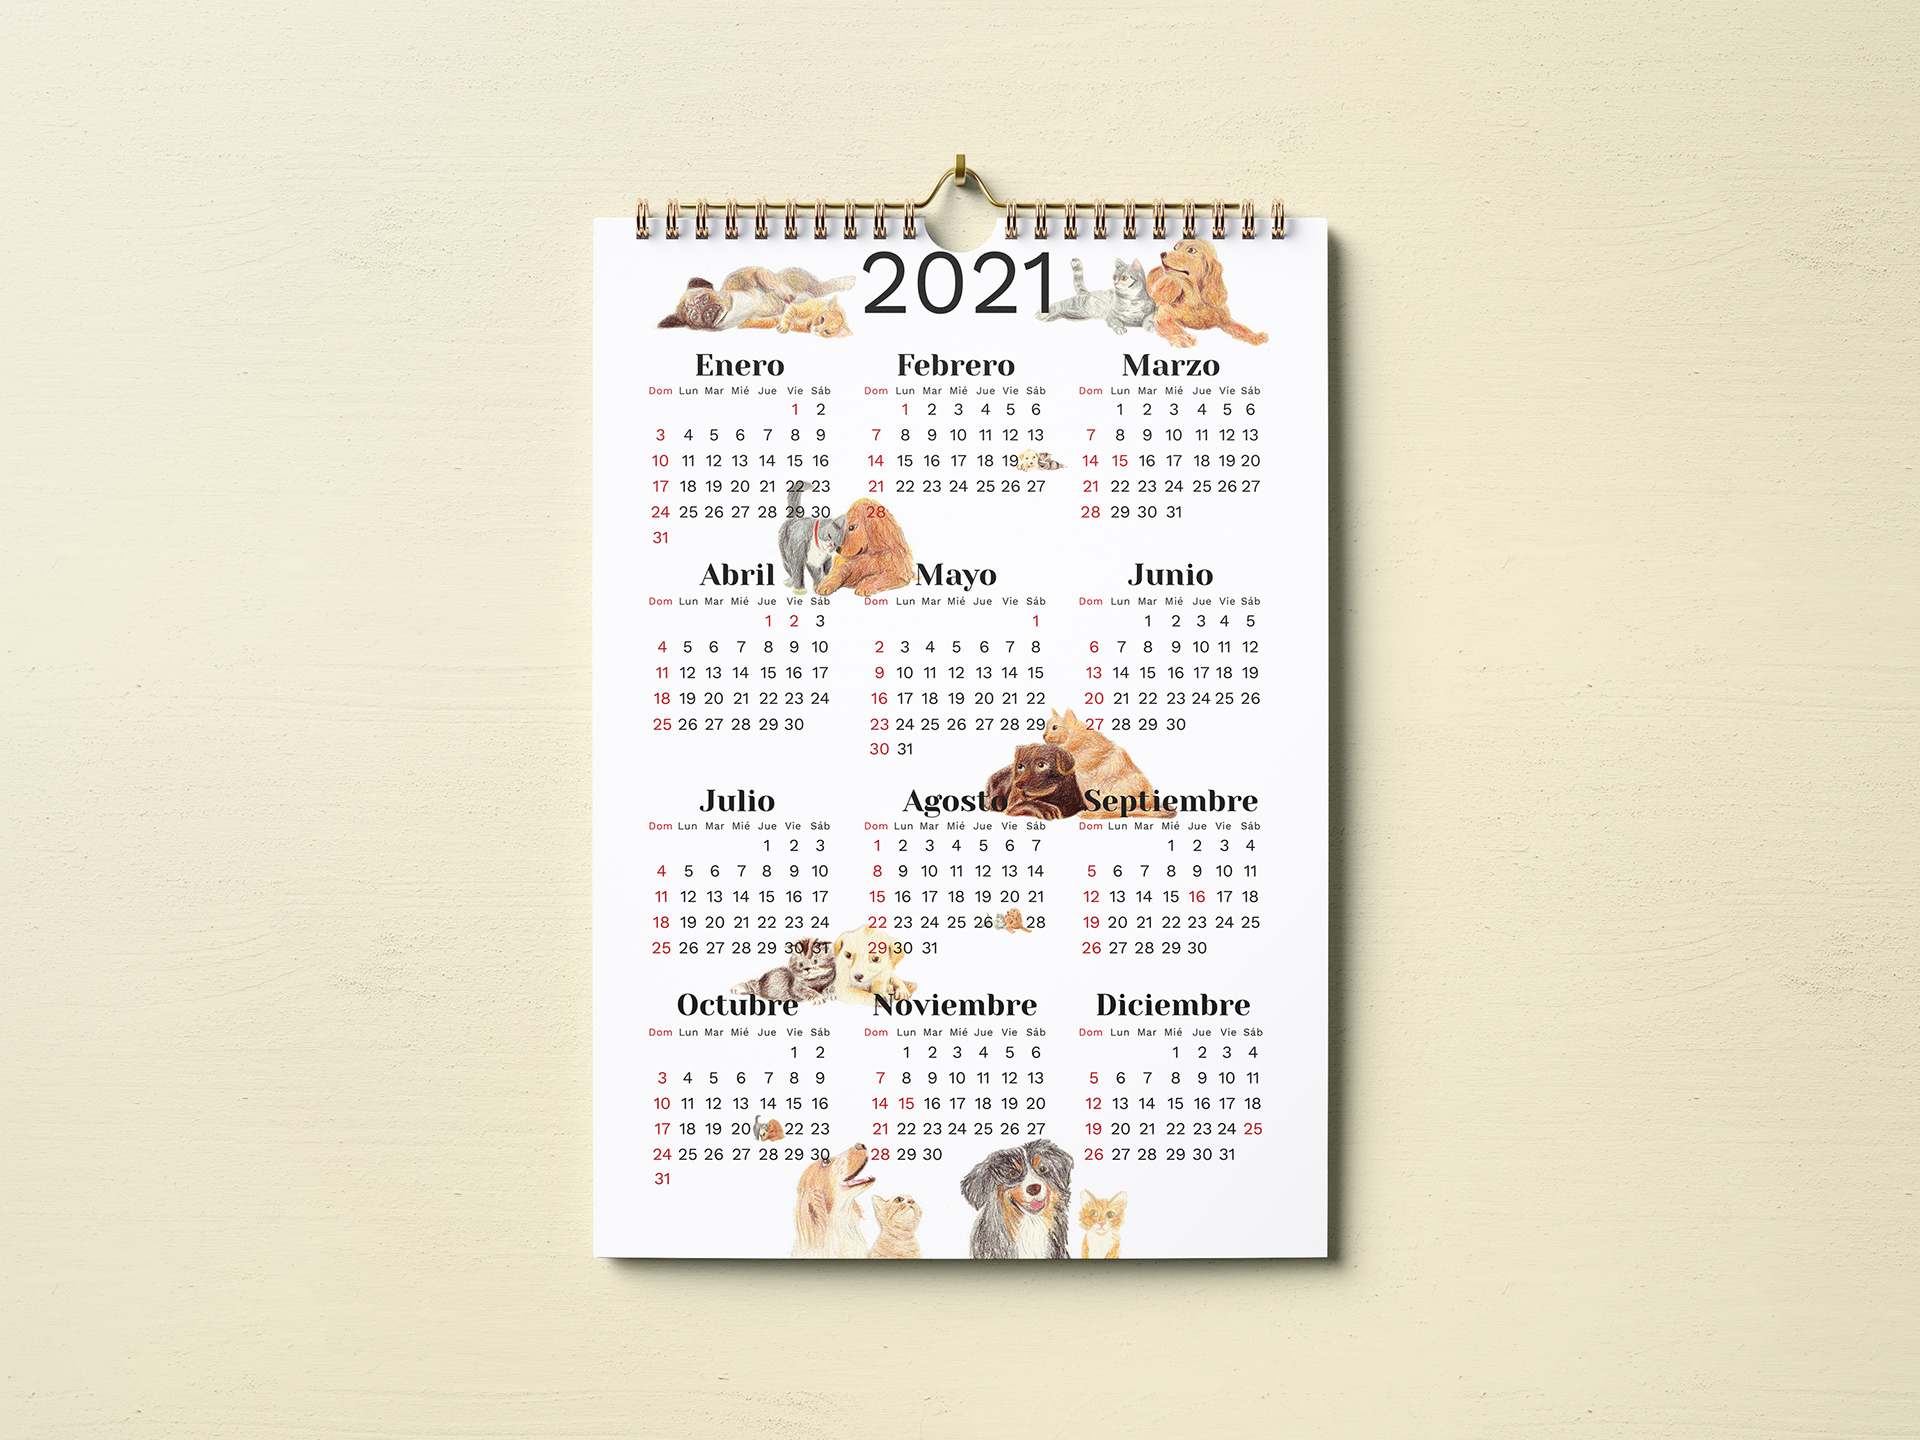 Tris Parr Calendario 2021 2021 Calendar Free Download